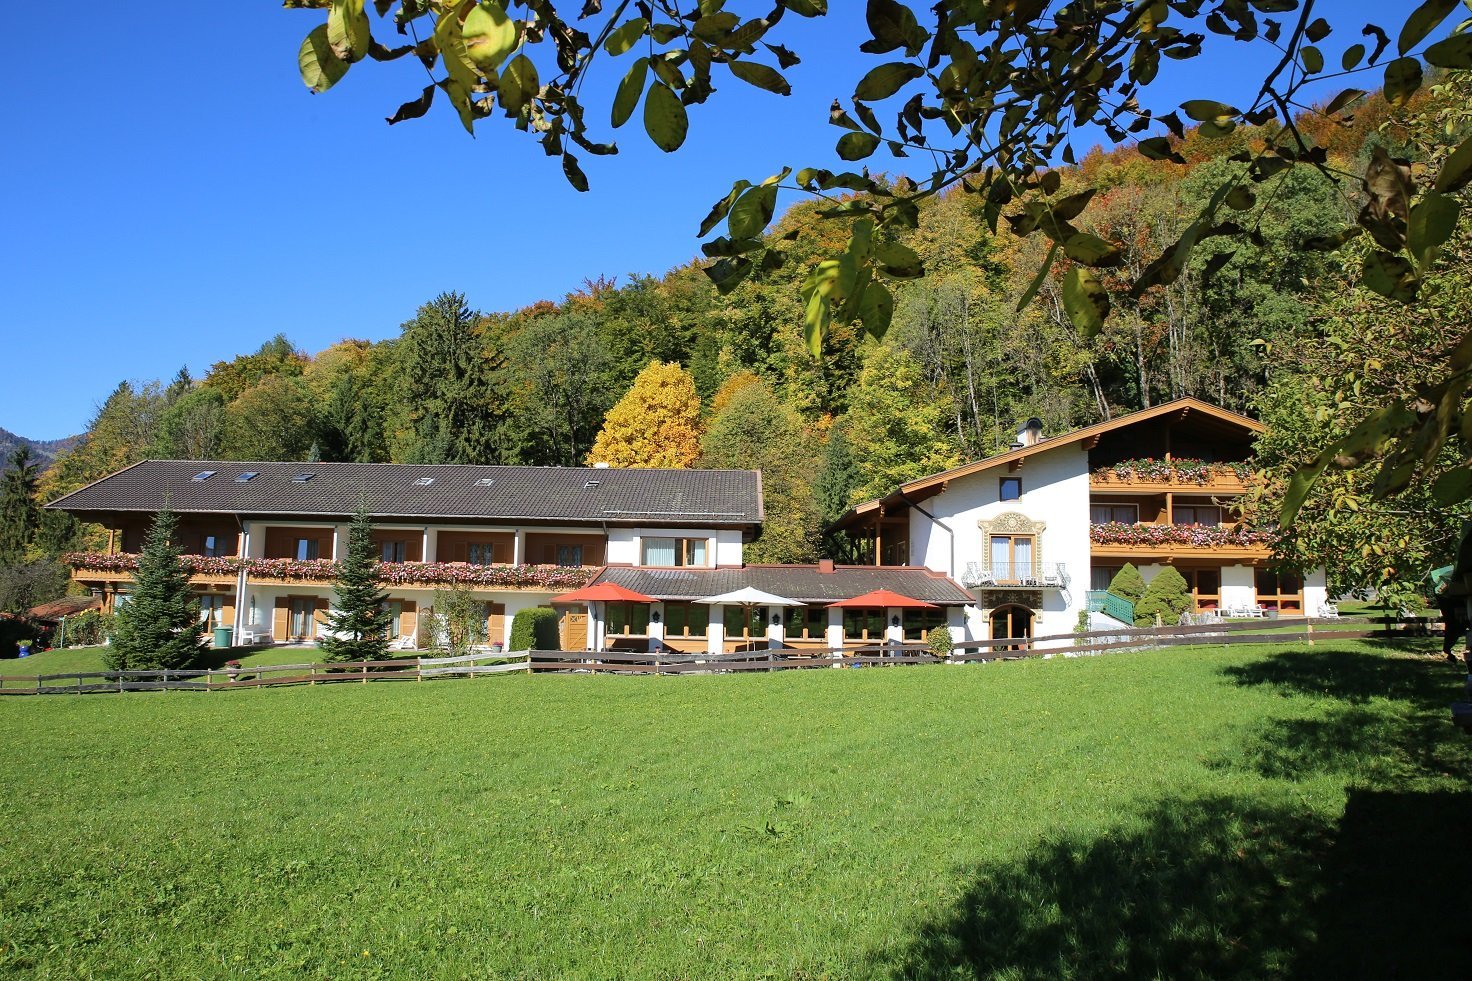 6 Tage Mit 66 Jahren – da fängt das Leben an – Landhotel Gabriele (3 Sterne) in Unterwössen, Bayern inkl. All Inclusive